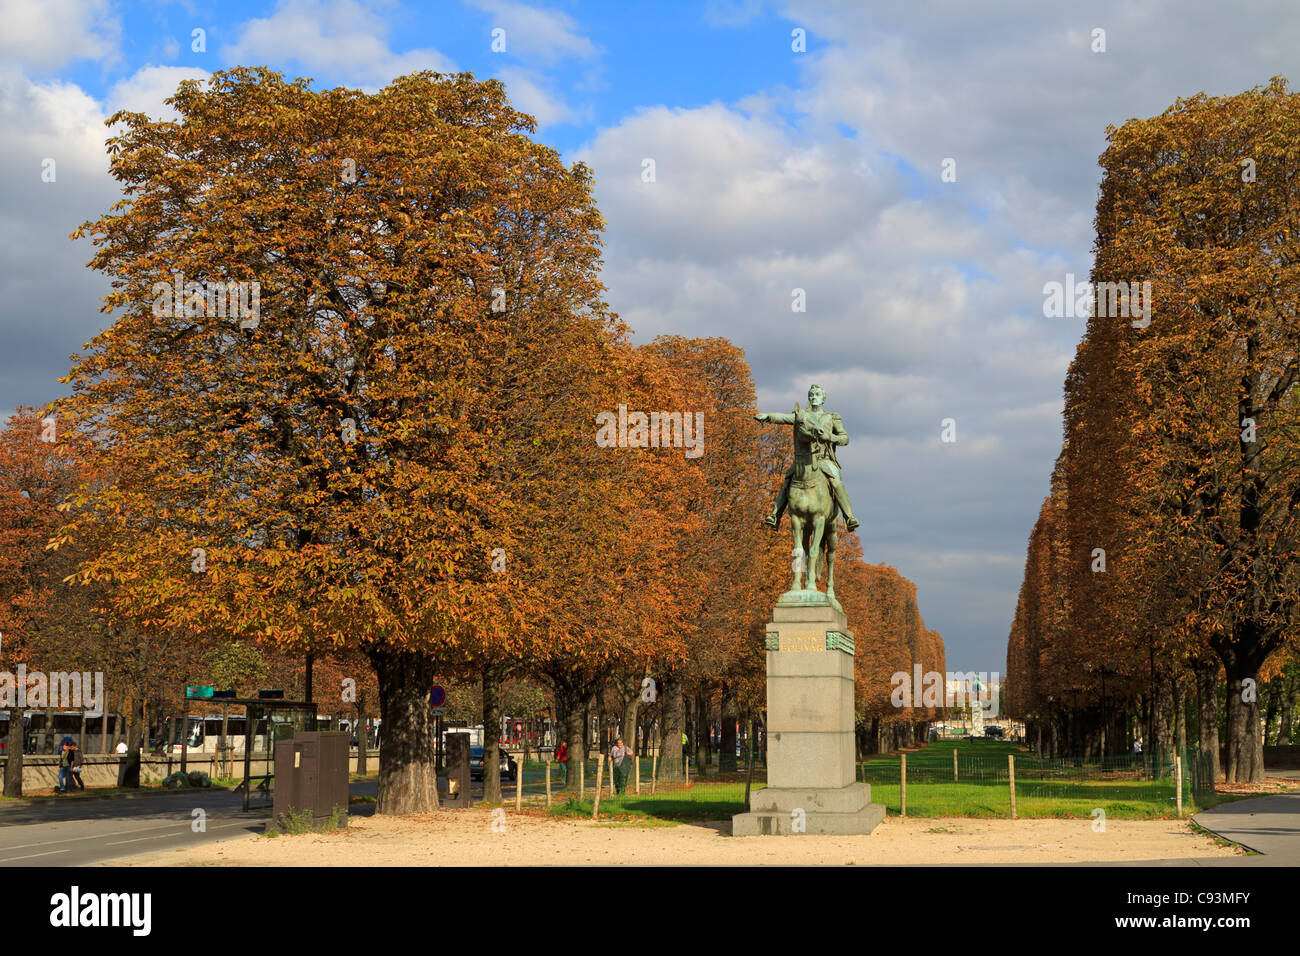 Statue of Simon Bolivar, Cours la Reine, Paris. Stock Photo